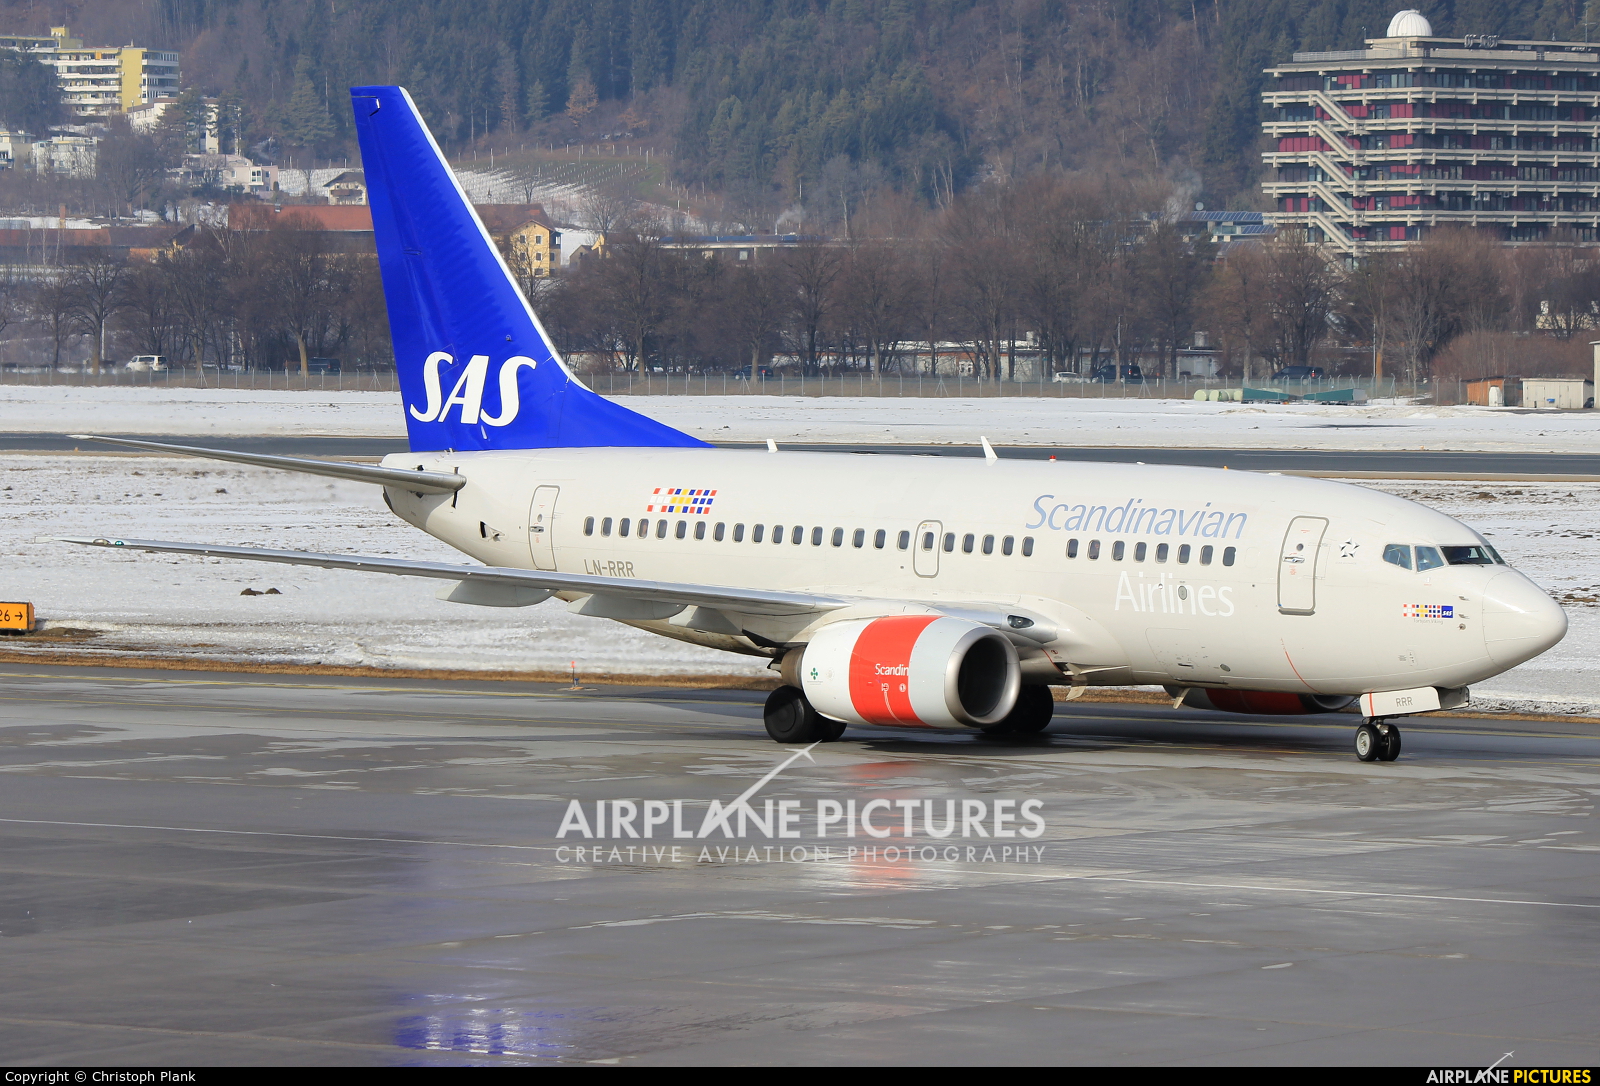 SAS - Scandinavian Airlines LN-RRR aircraft at Innsbruck